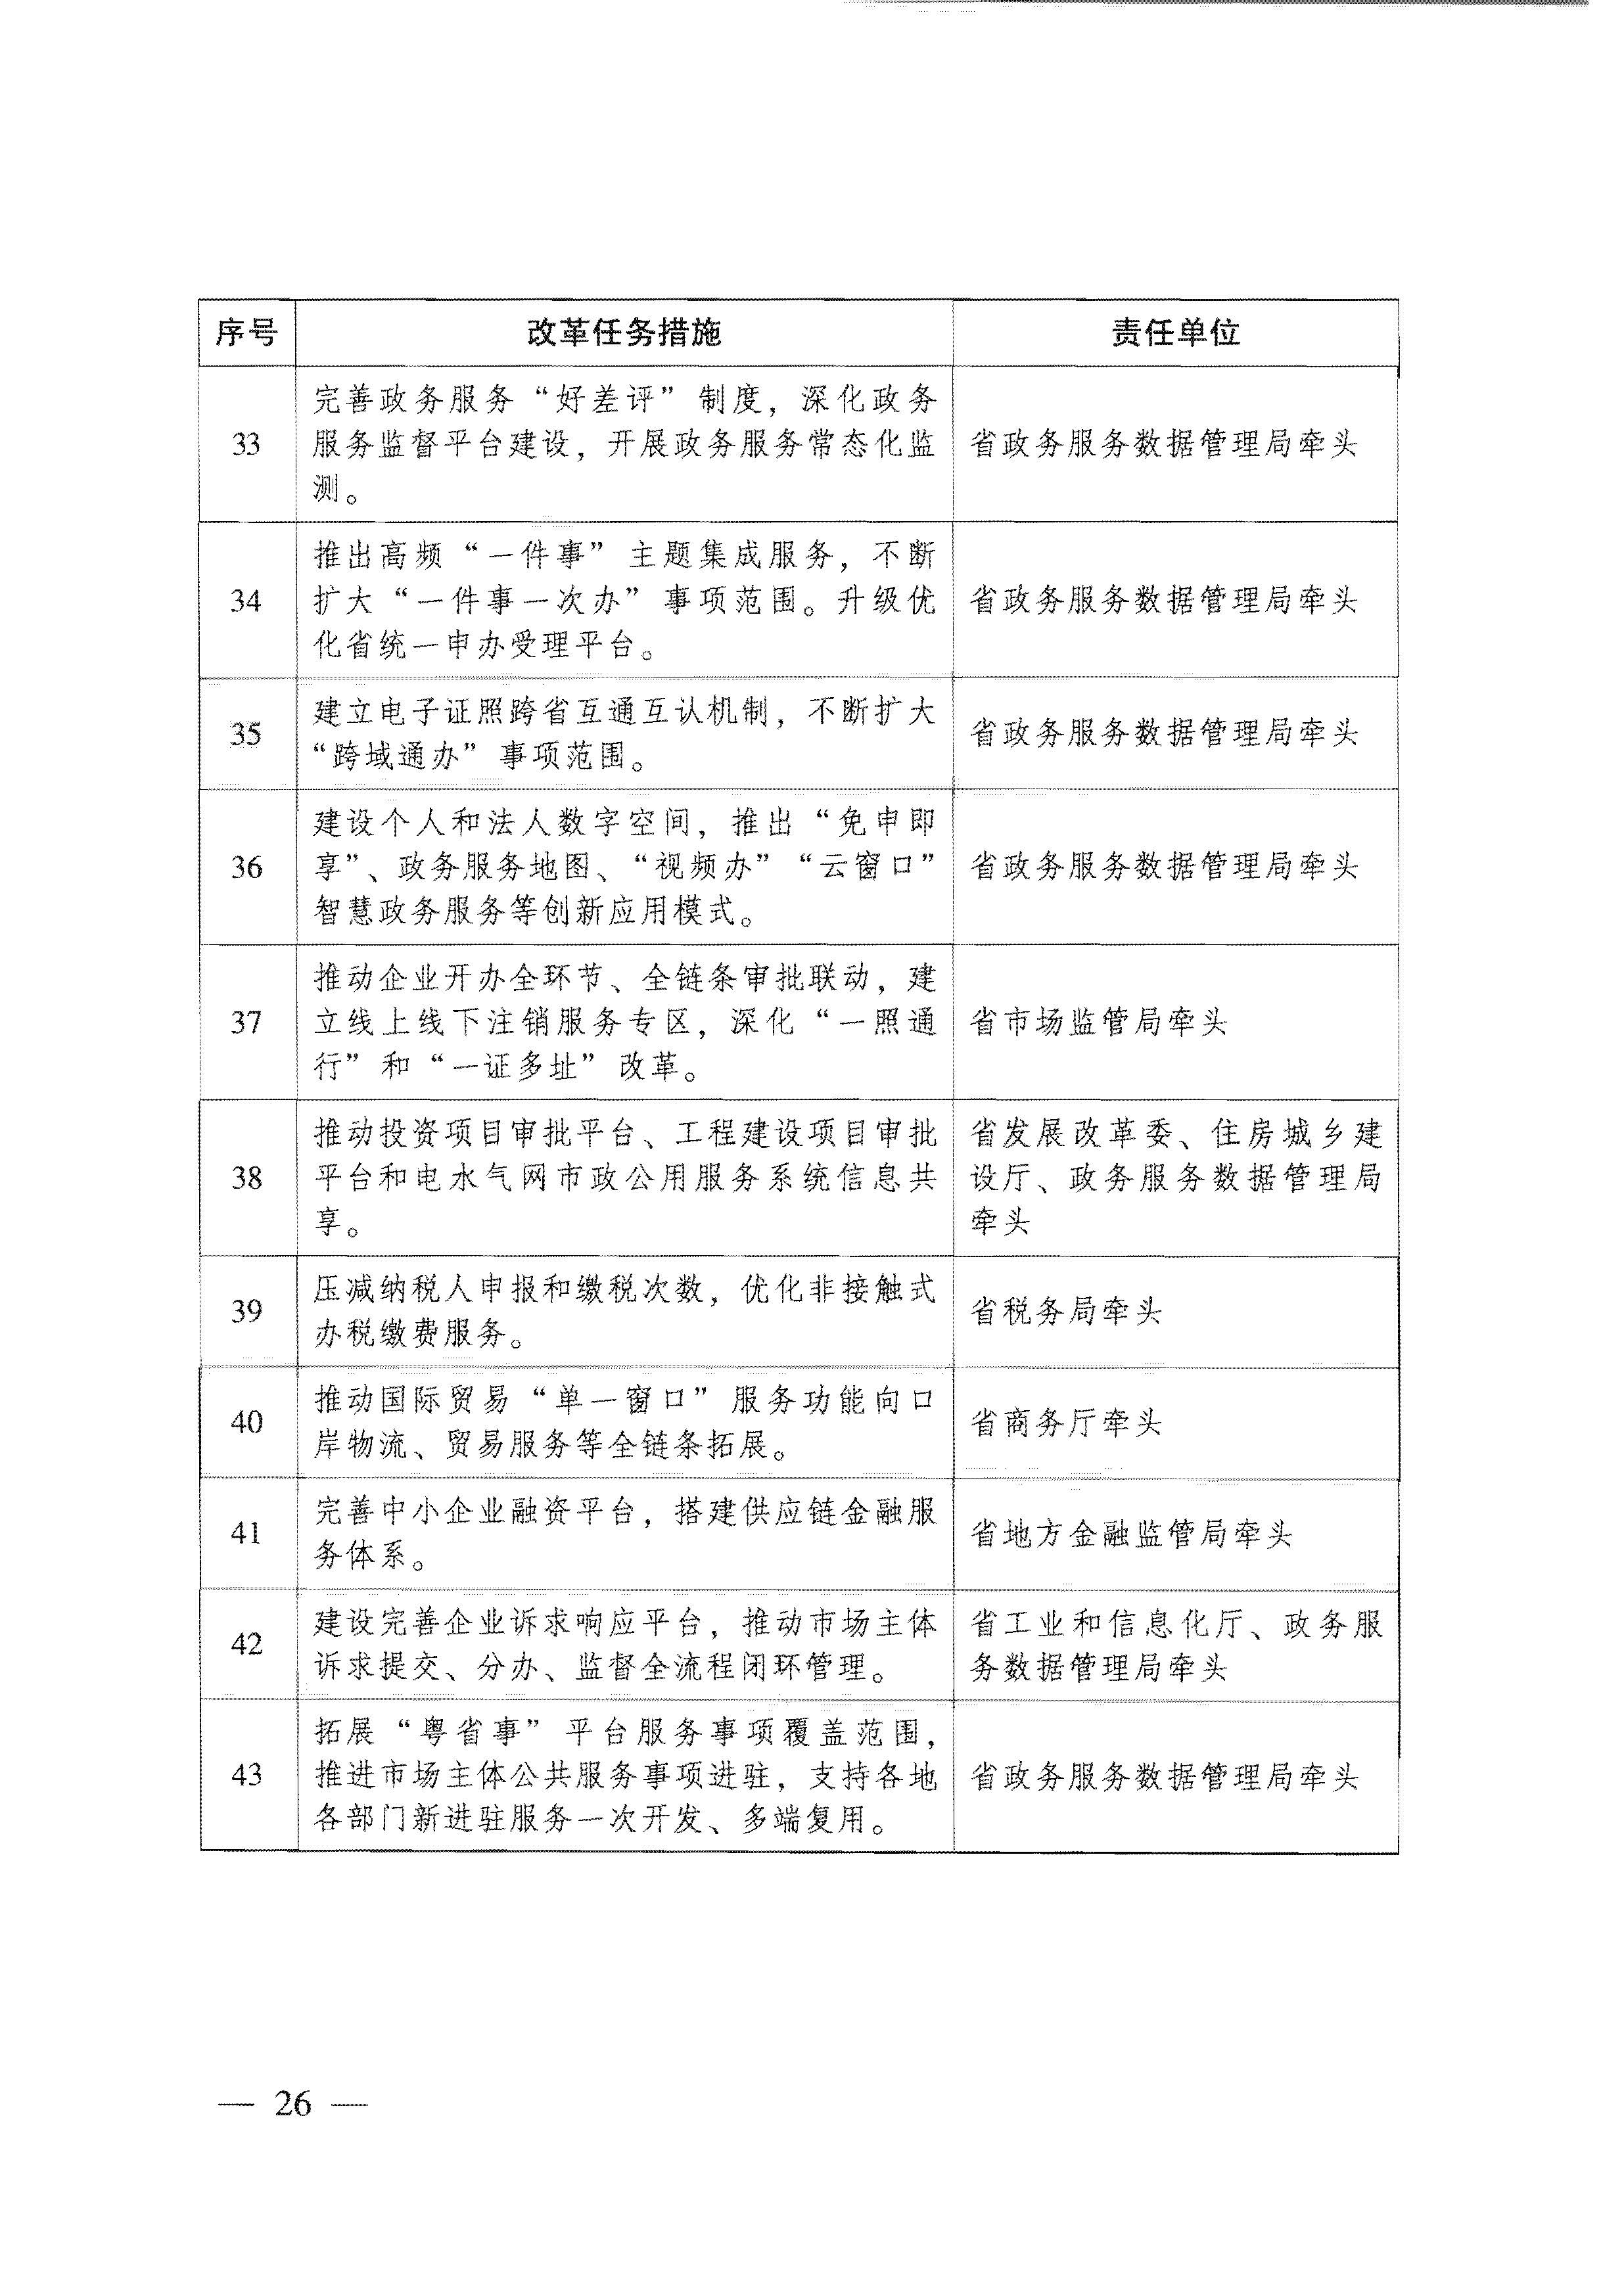 广东省人民政府关于进一步深化数字政府改革建设的实施意见_页面_26.jpg